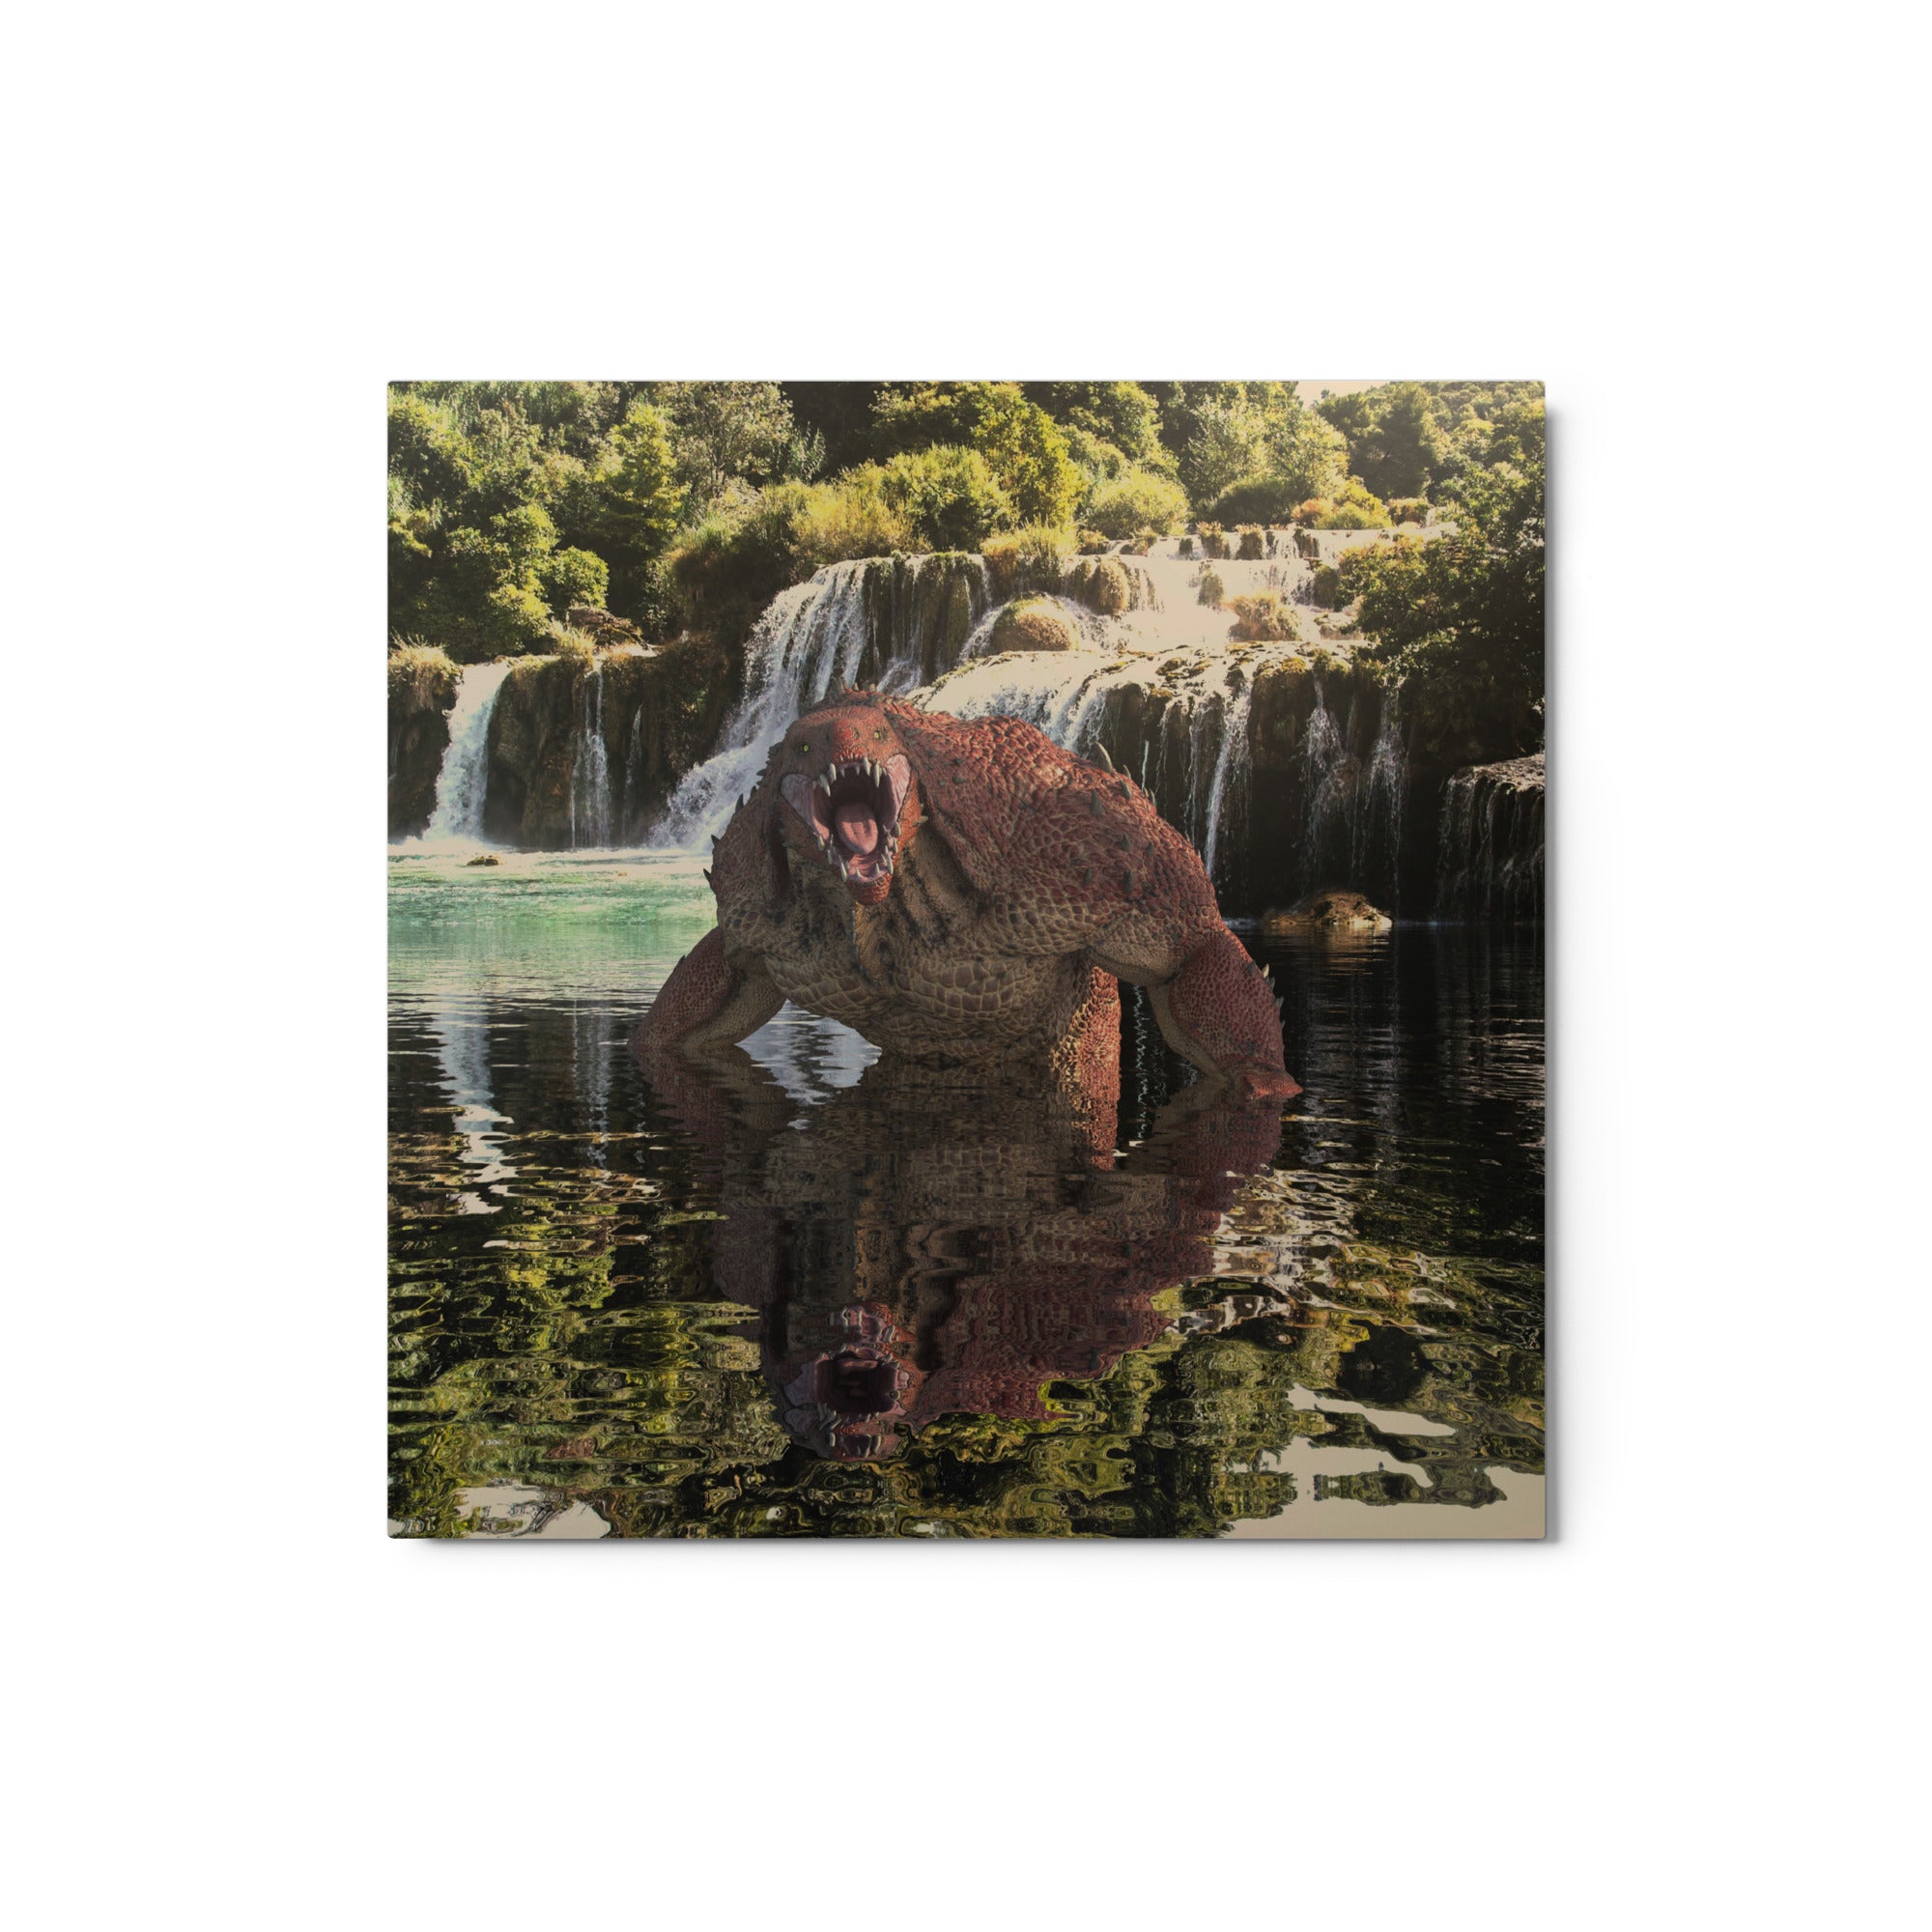 Metal Prints | Carno Reptilian in Lake